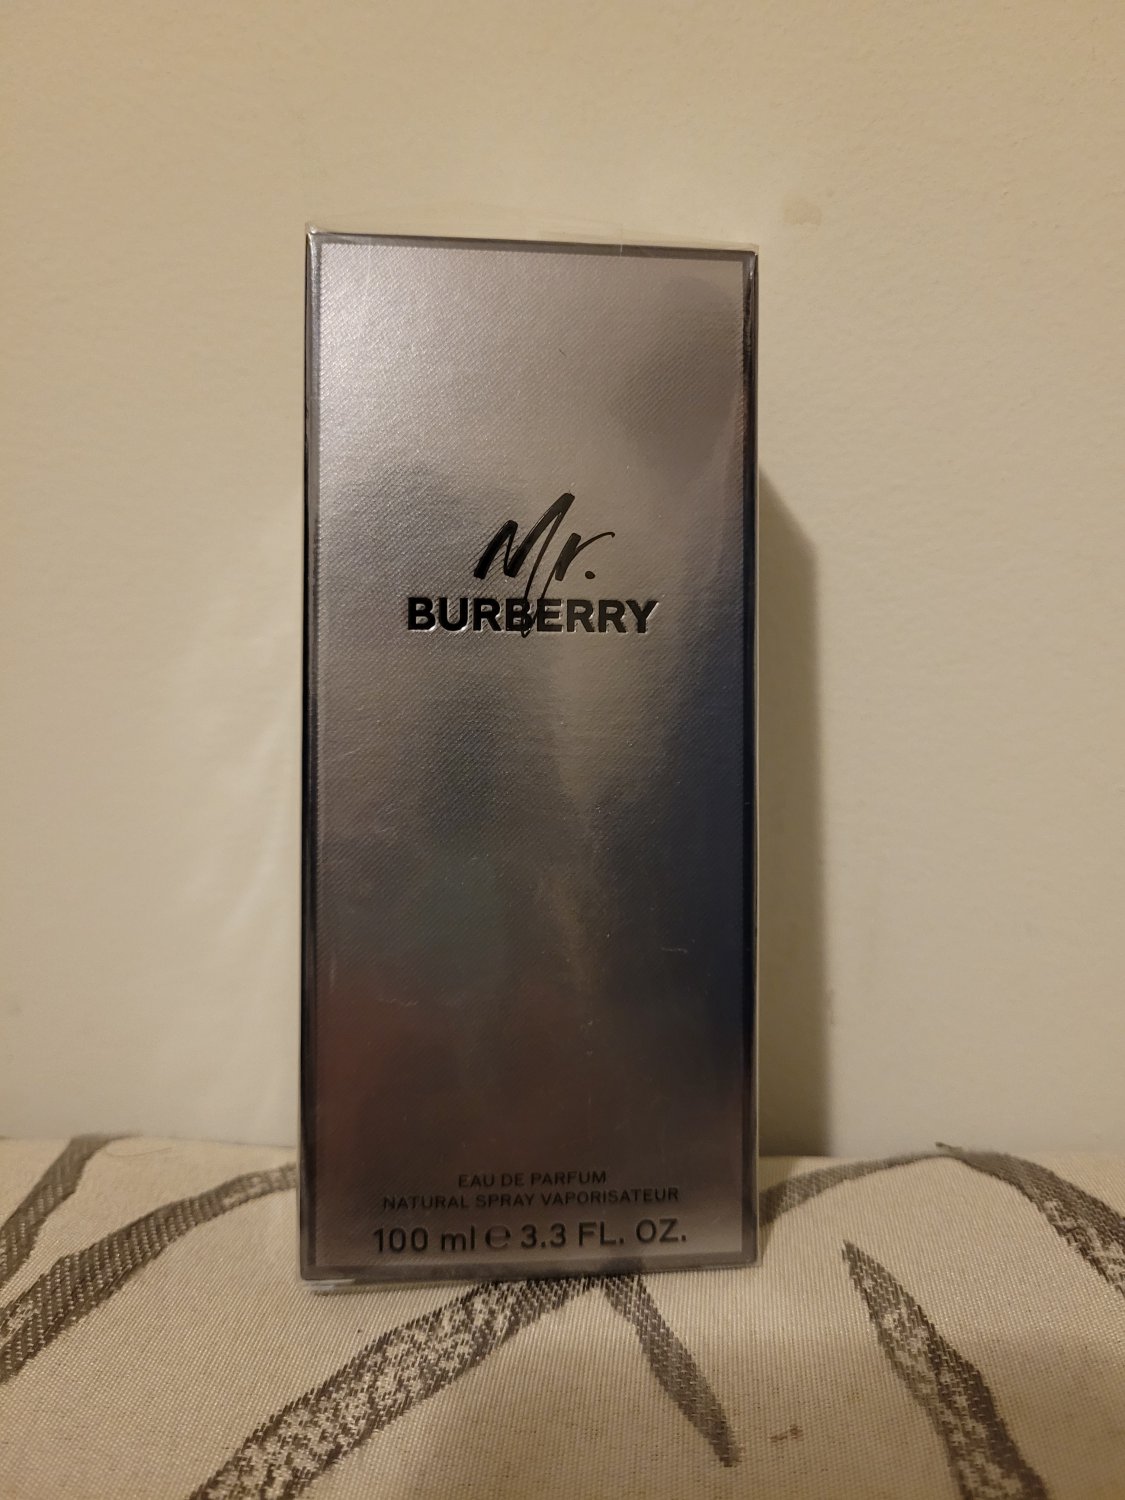 Mr. Burberry by Burberry for Men 3.3 oz Eau de Parfum Spray